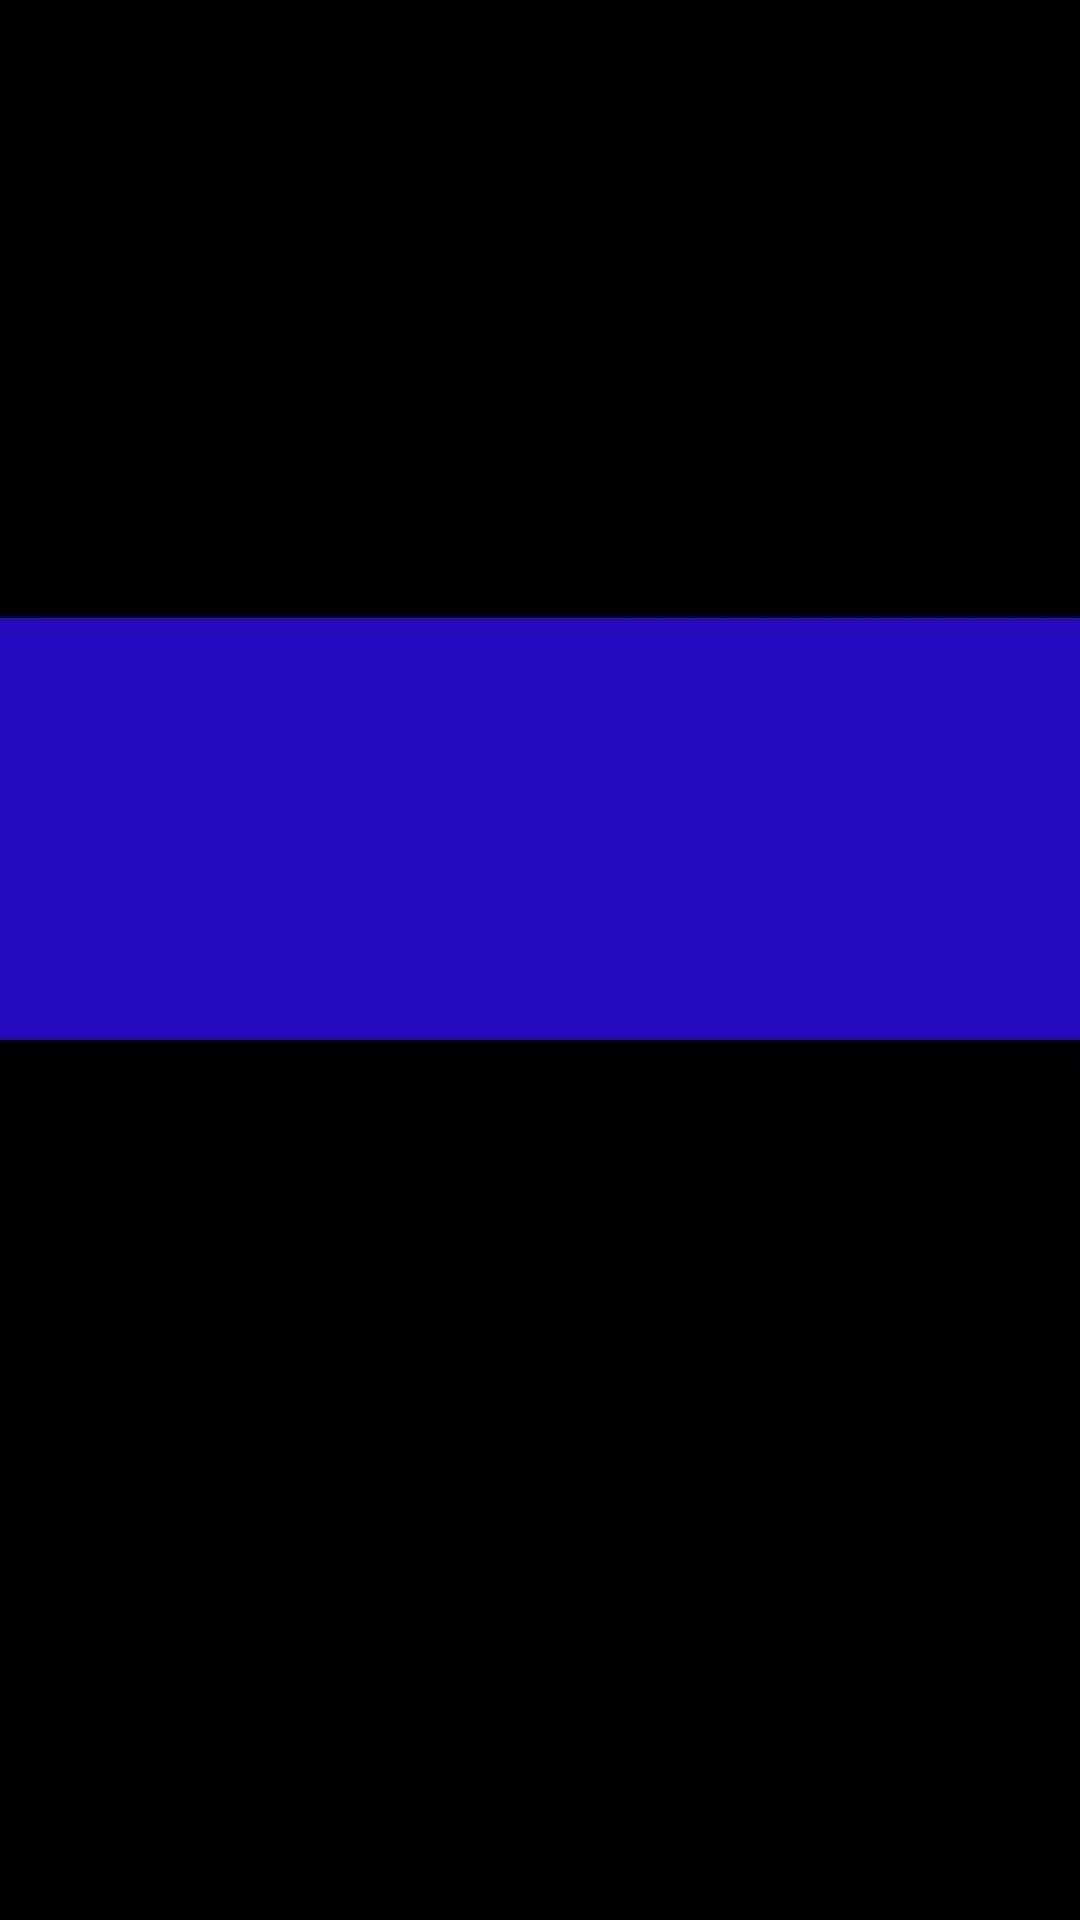 blue line law enforcement backgrounds le themed plix related high 1080x1920